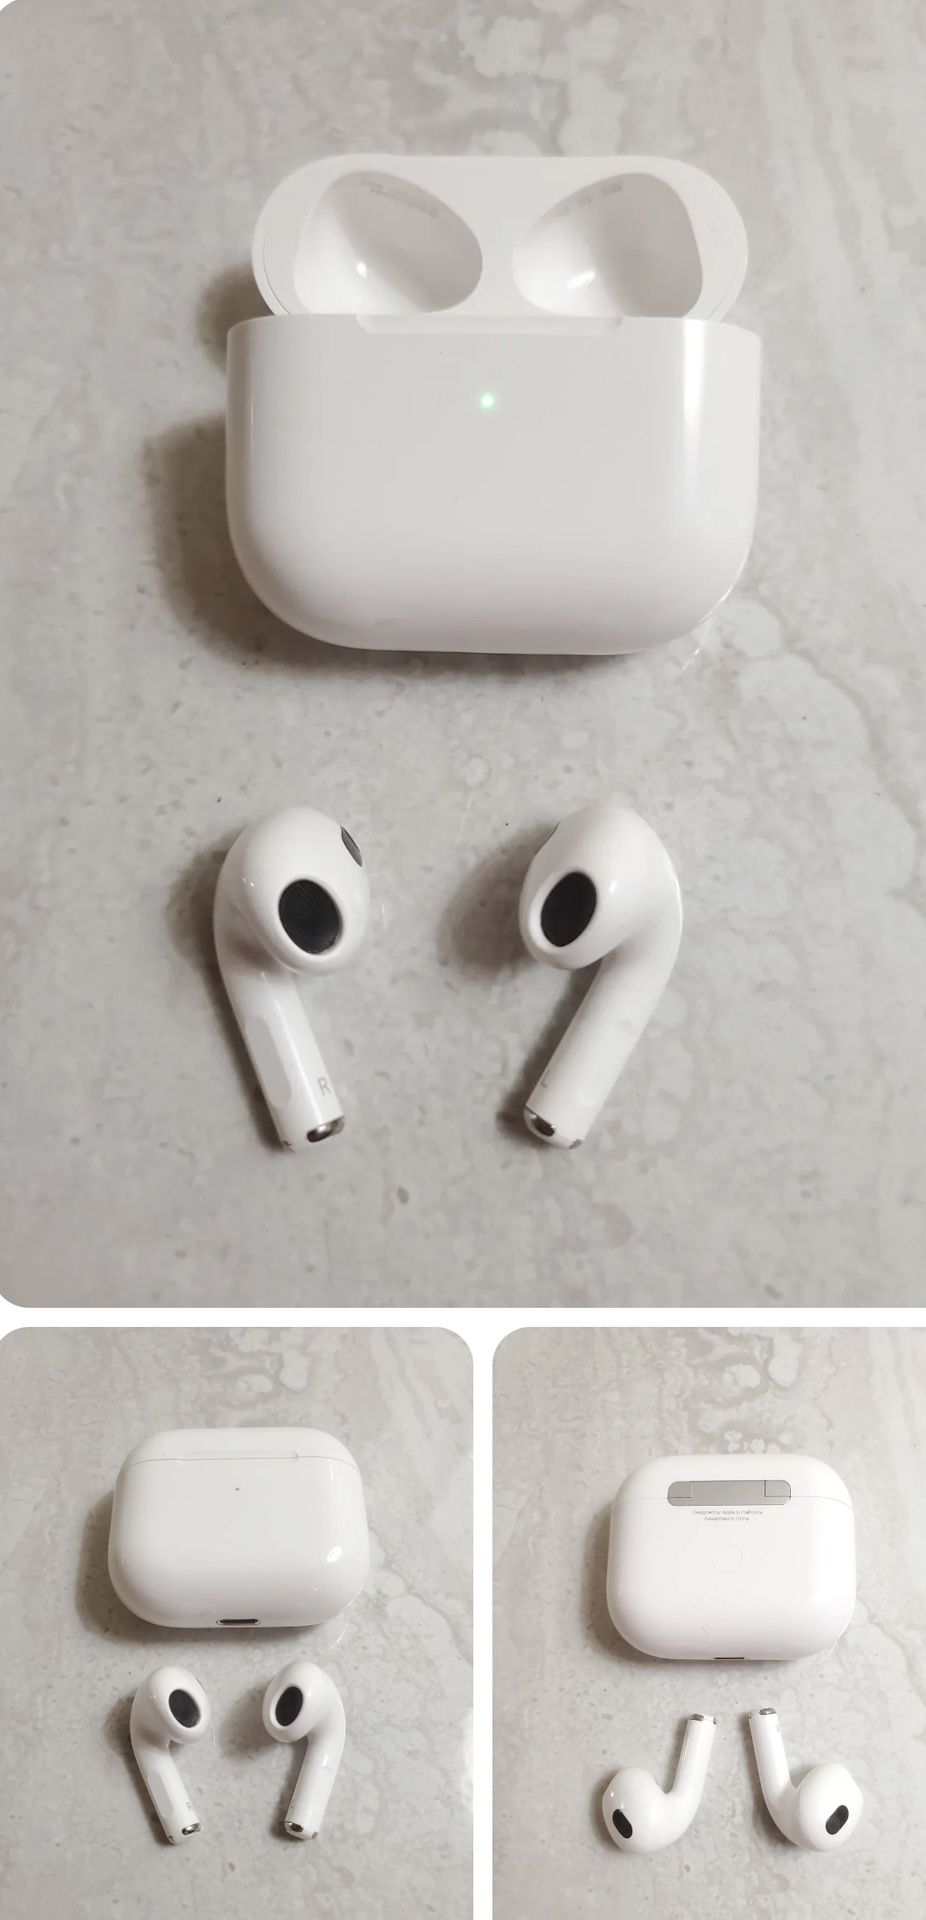 Apple AirPod 3rd Generation Wireless In-Ear Headset - White